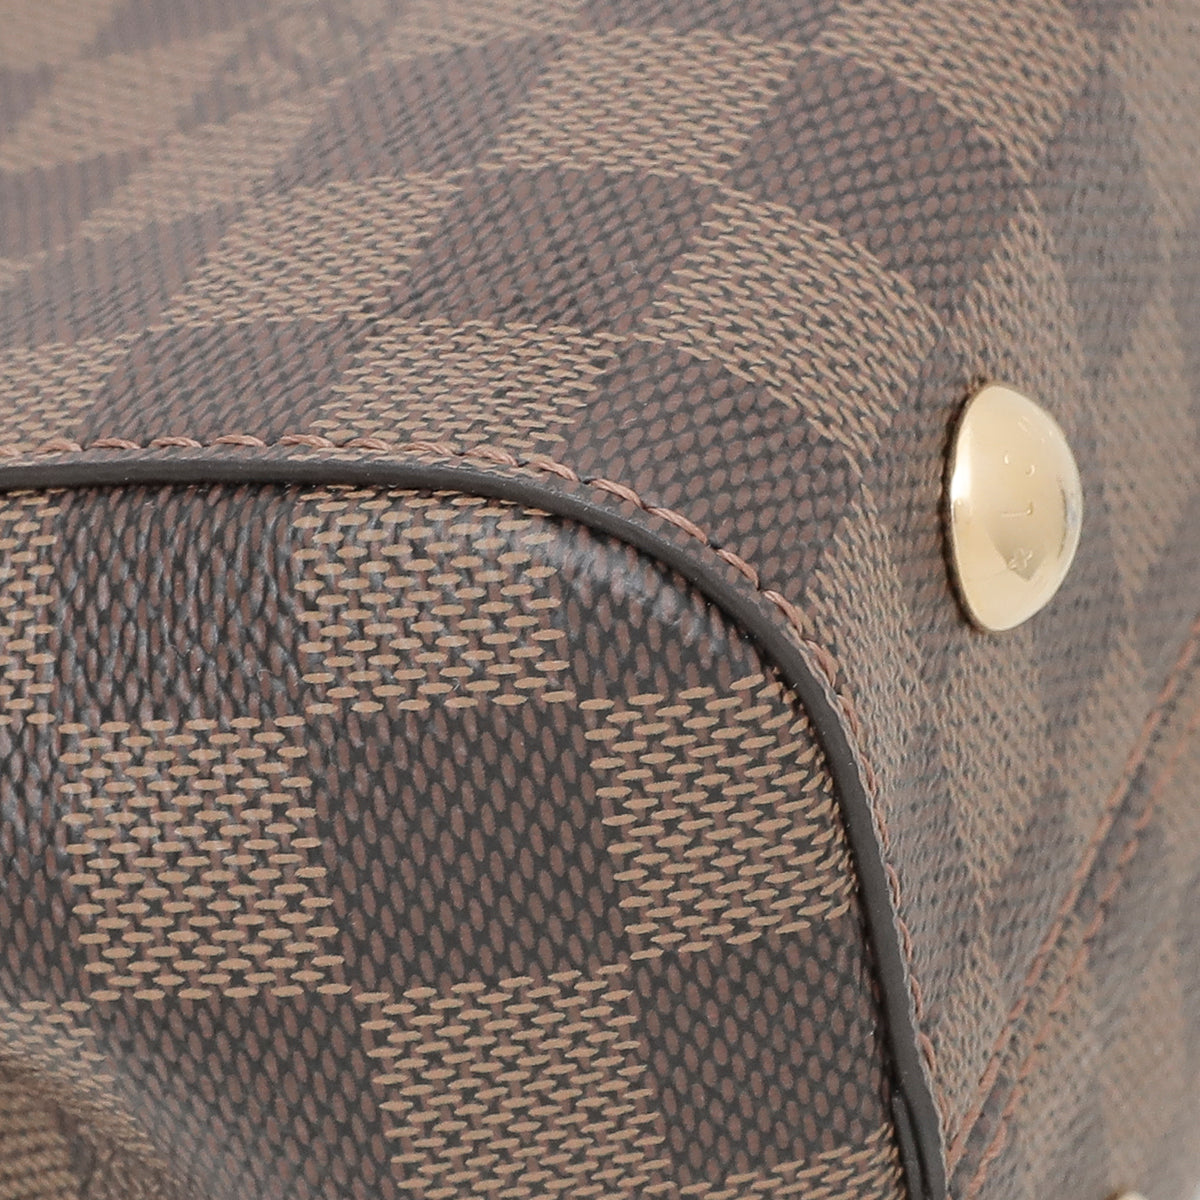 Louis Vuitton Bicolor Bond Street Bag